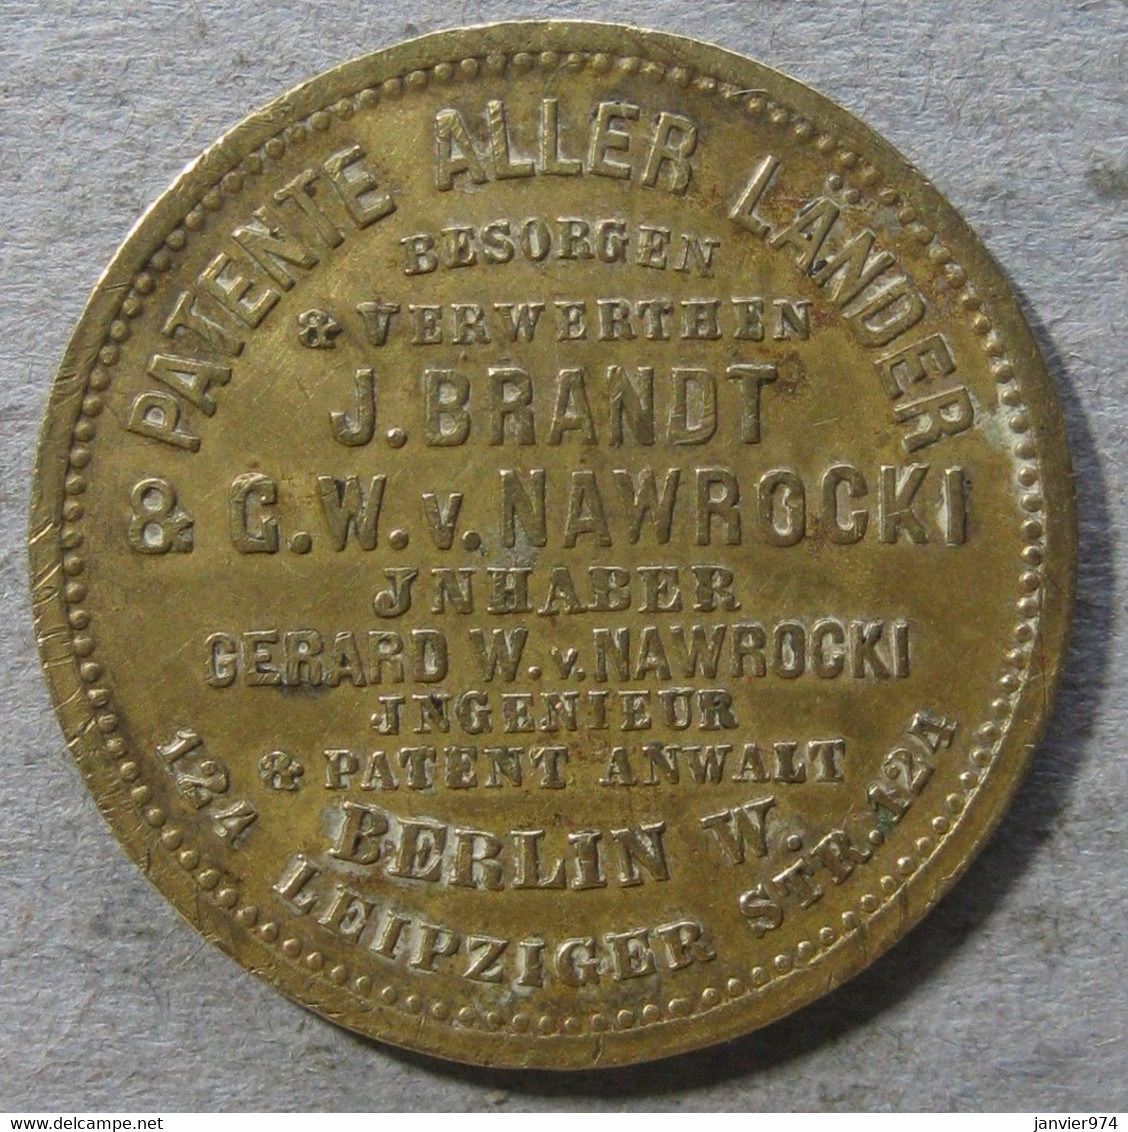 Medaille Commémorant Le Dépôt Du 5000e Brevet, G. W. Nawrocki 1882 Berlin, Par Lauer - Professionali/Di Società